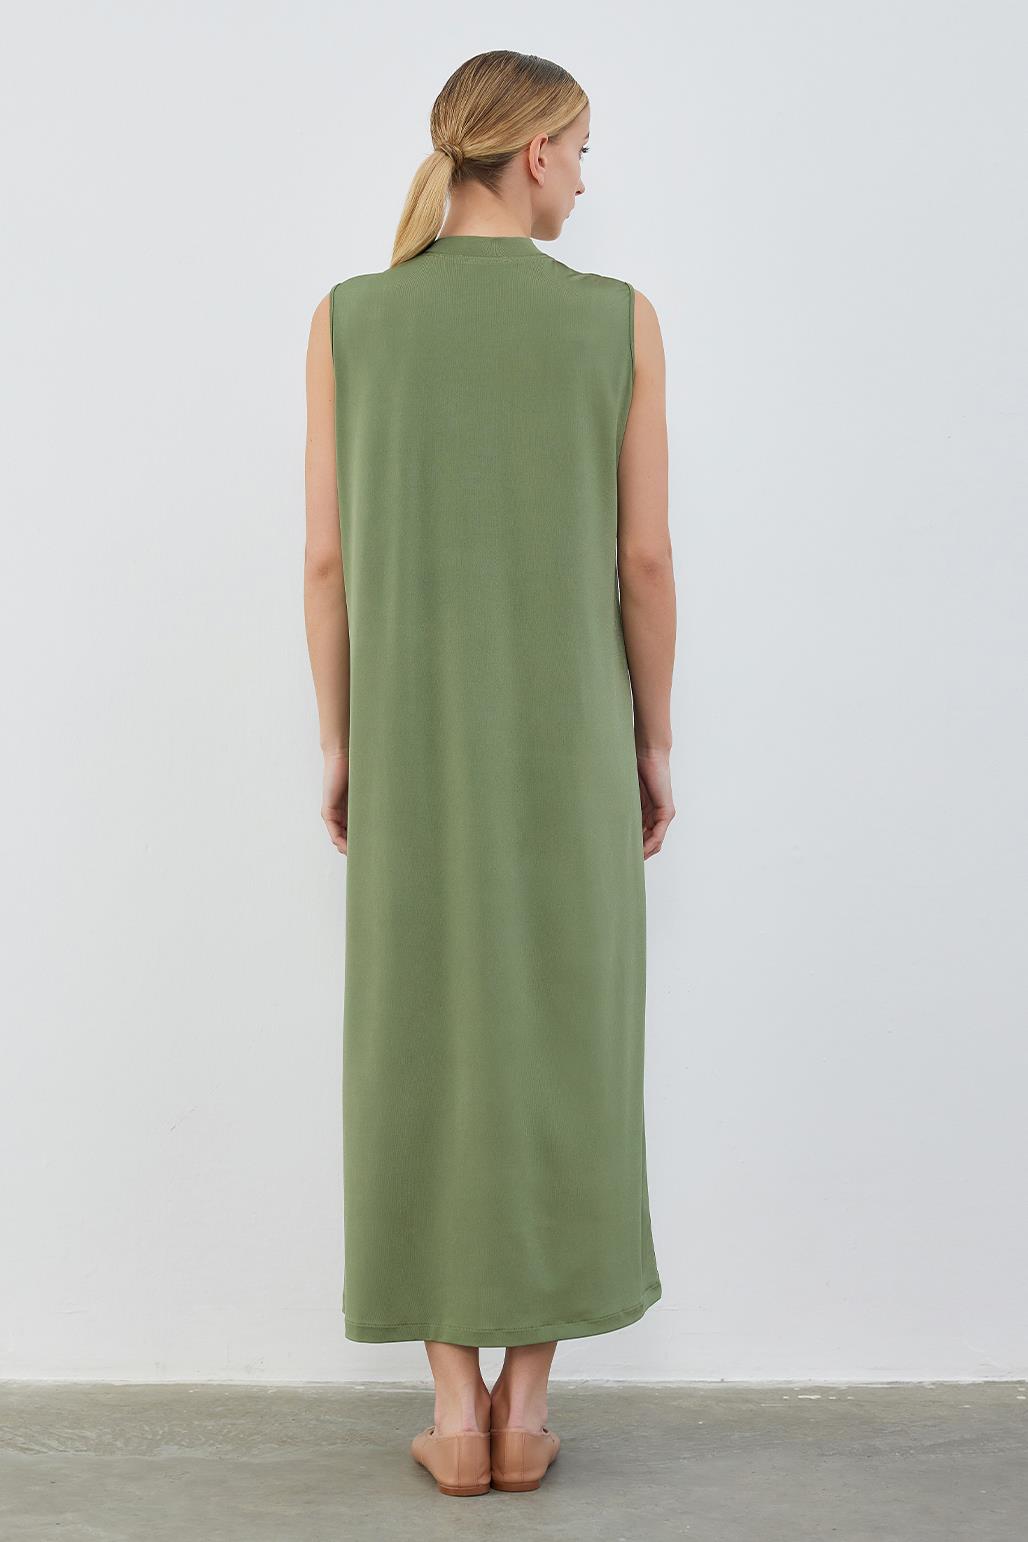 Silk Knitted Sleeveless Dress Khaki Green